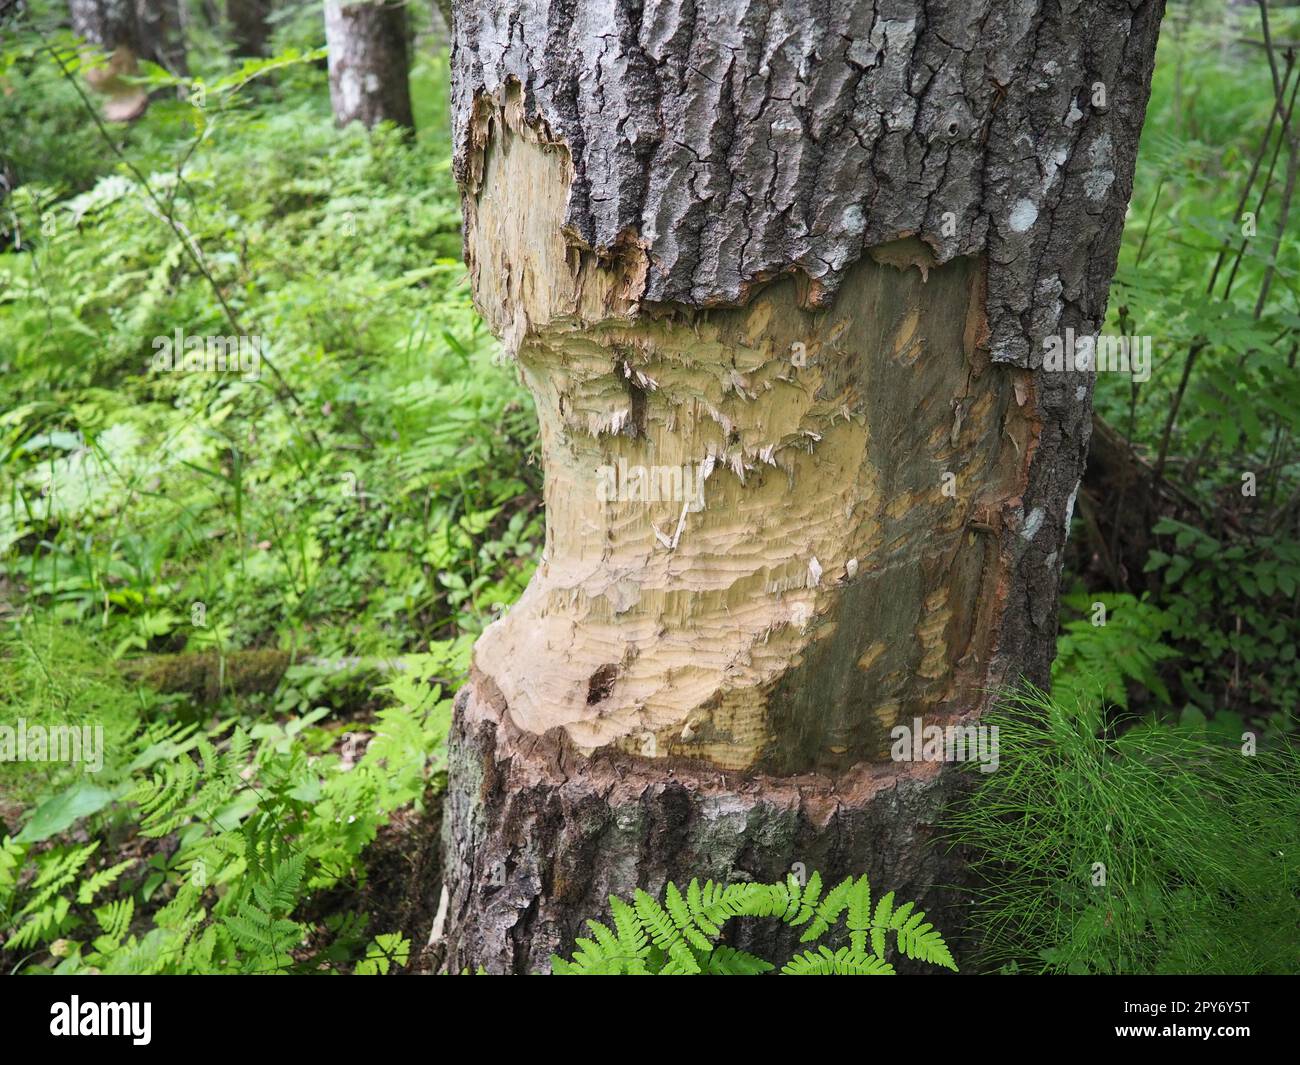 Ein Baum, der von einem Biber genagt wurde. Beschädigte Rinde und beschädigtes Holz. Die Arbeit eines Bibers für den Bau eines Dammes. Taiga, Karelien, Russland. Jagen und Angeln. Lebensaktivität der europäischen Waldtiere. Stockfoto